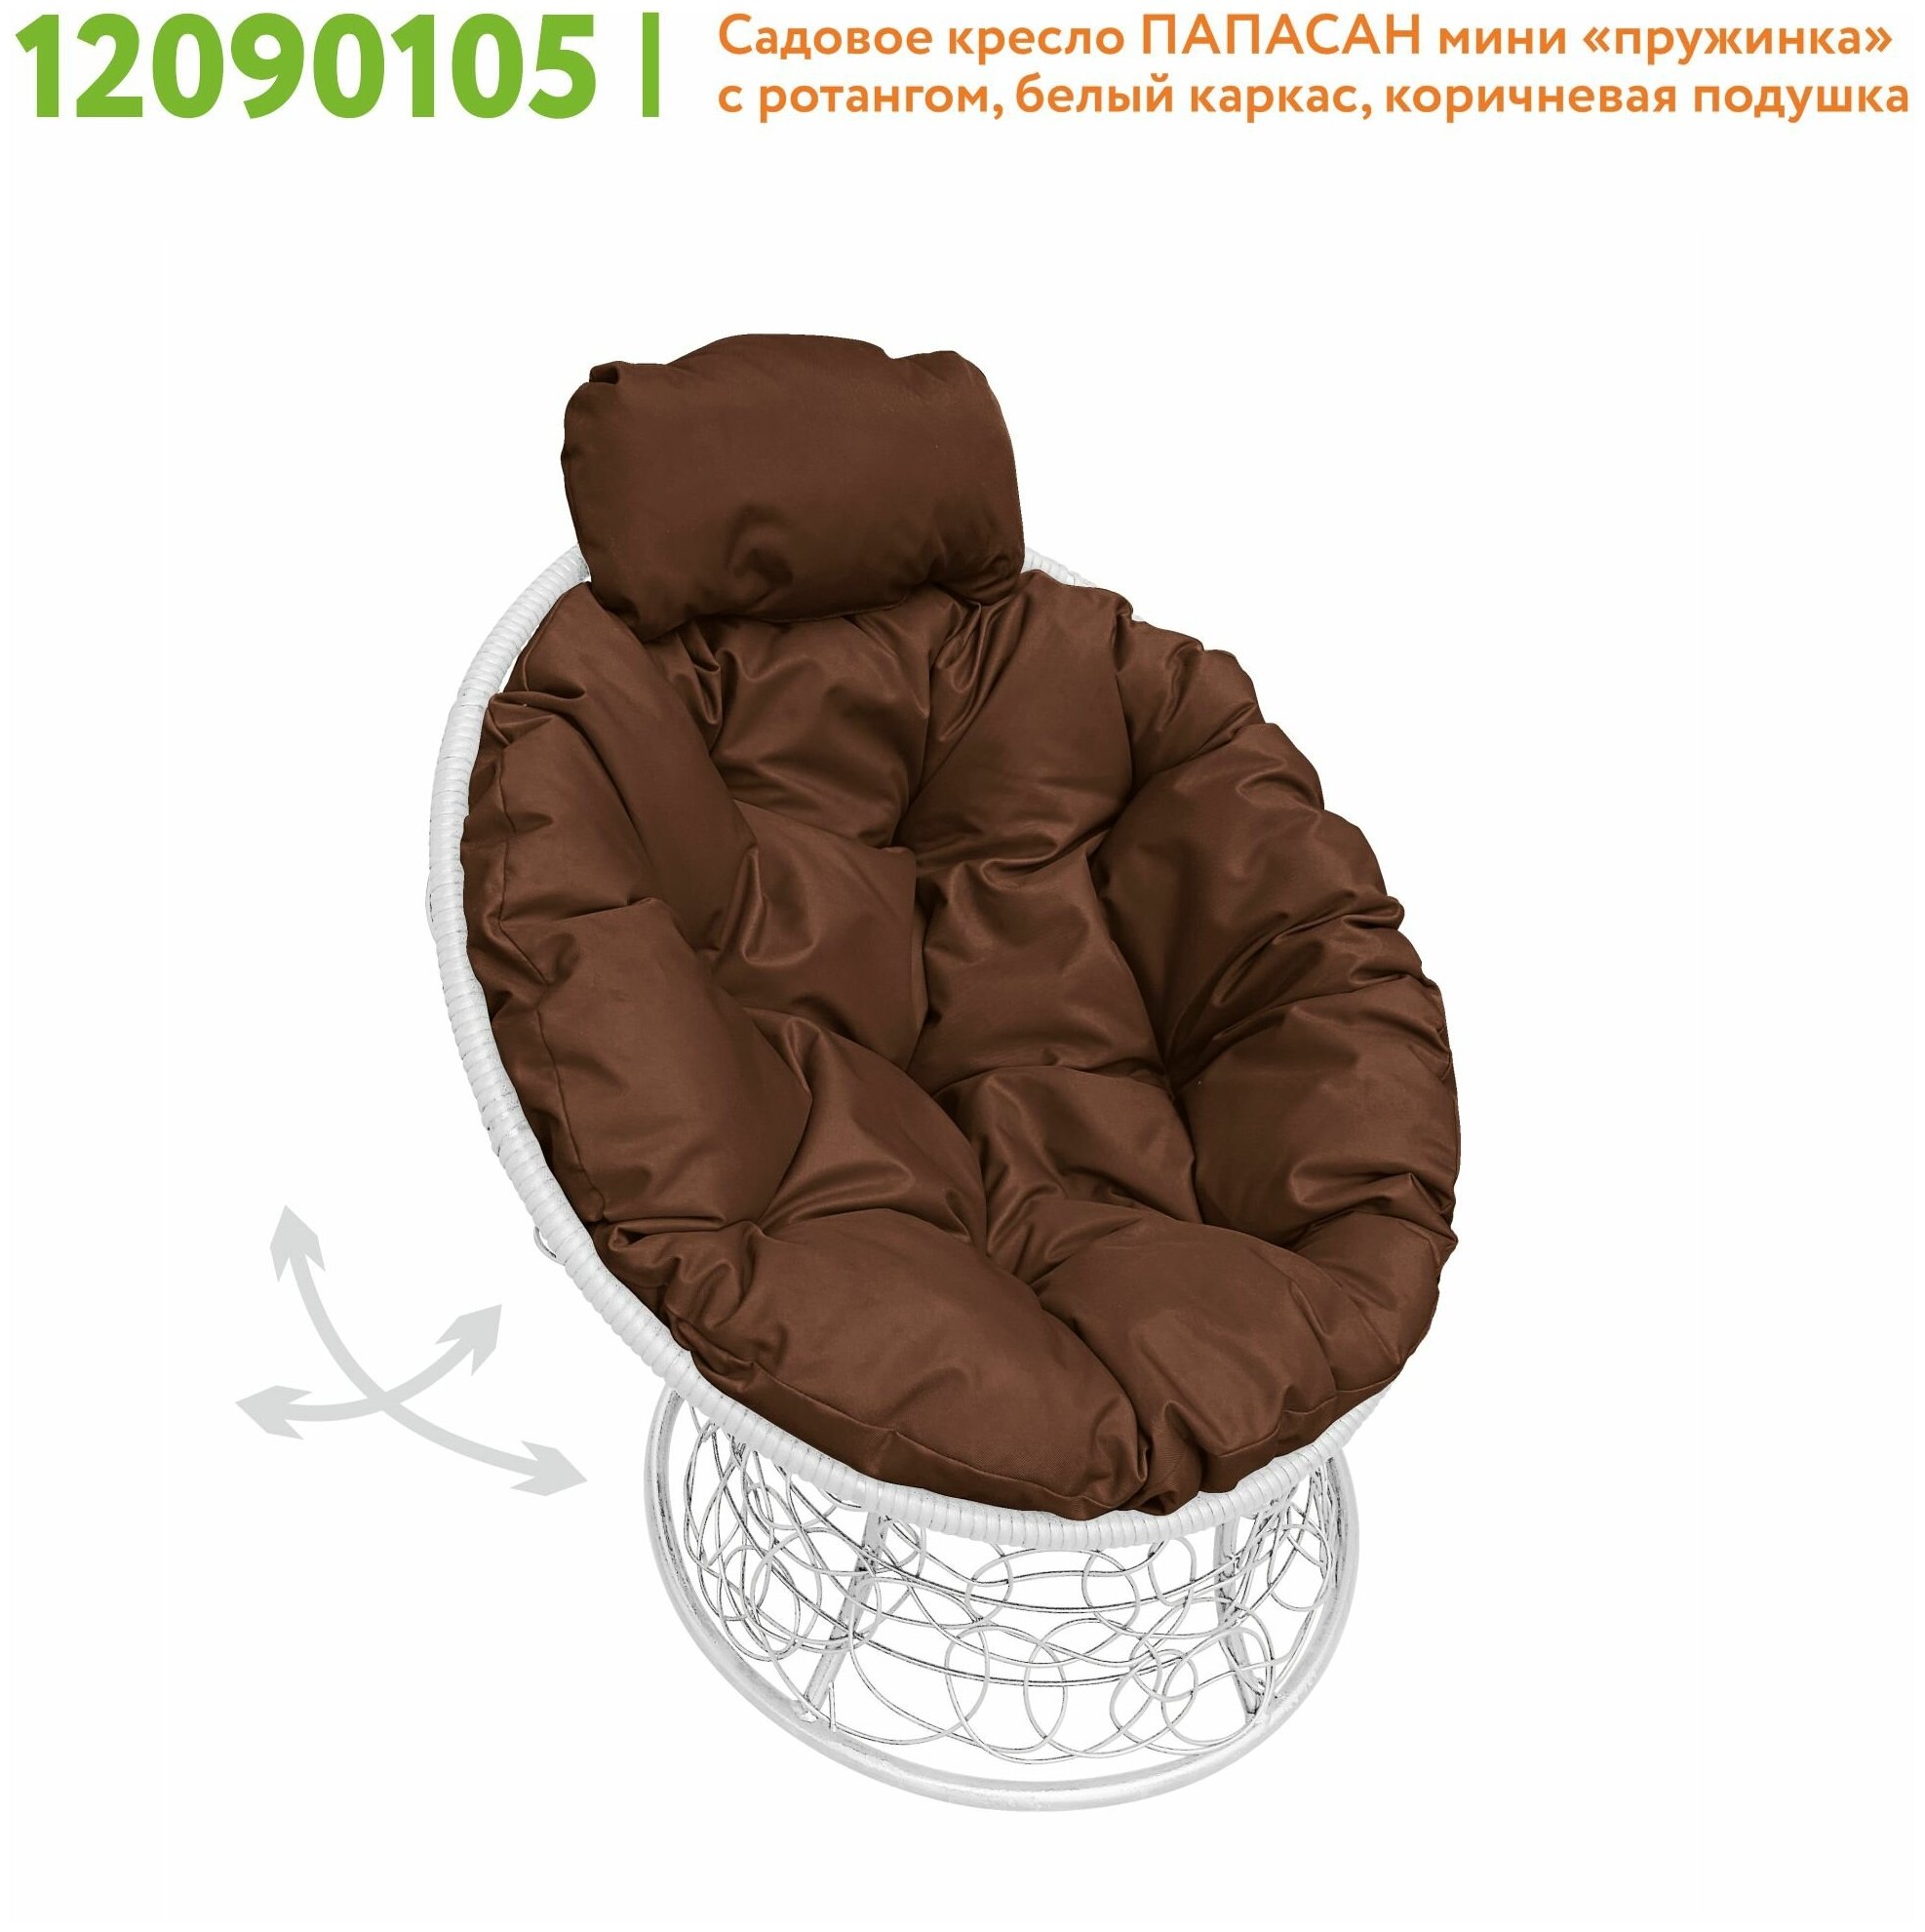 Кресло садовое M-Group папасан пружинка мини ротанг белое, коричневая подушка - фотография № 2